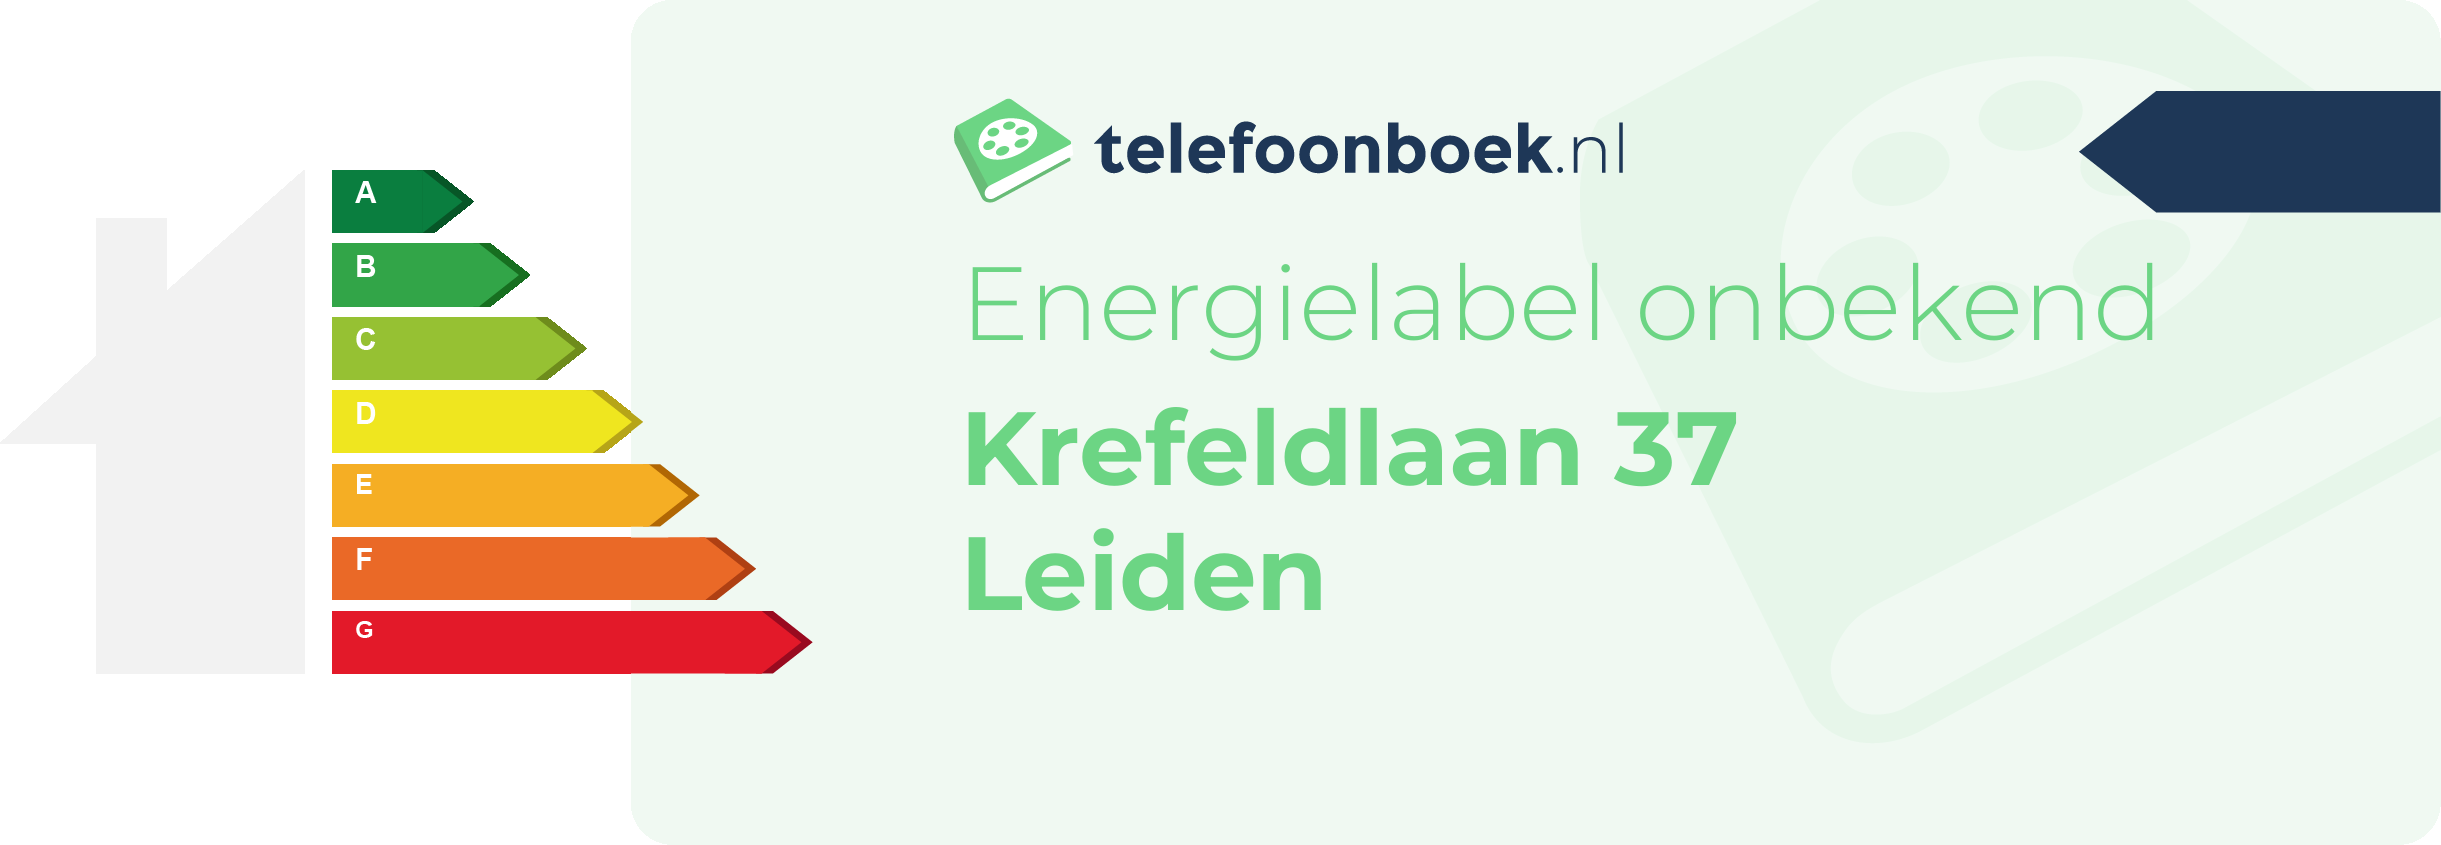 Energielabel Krefeldlaan 37 Leiden